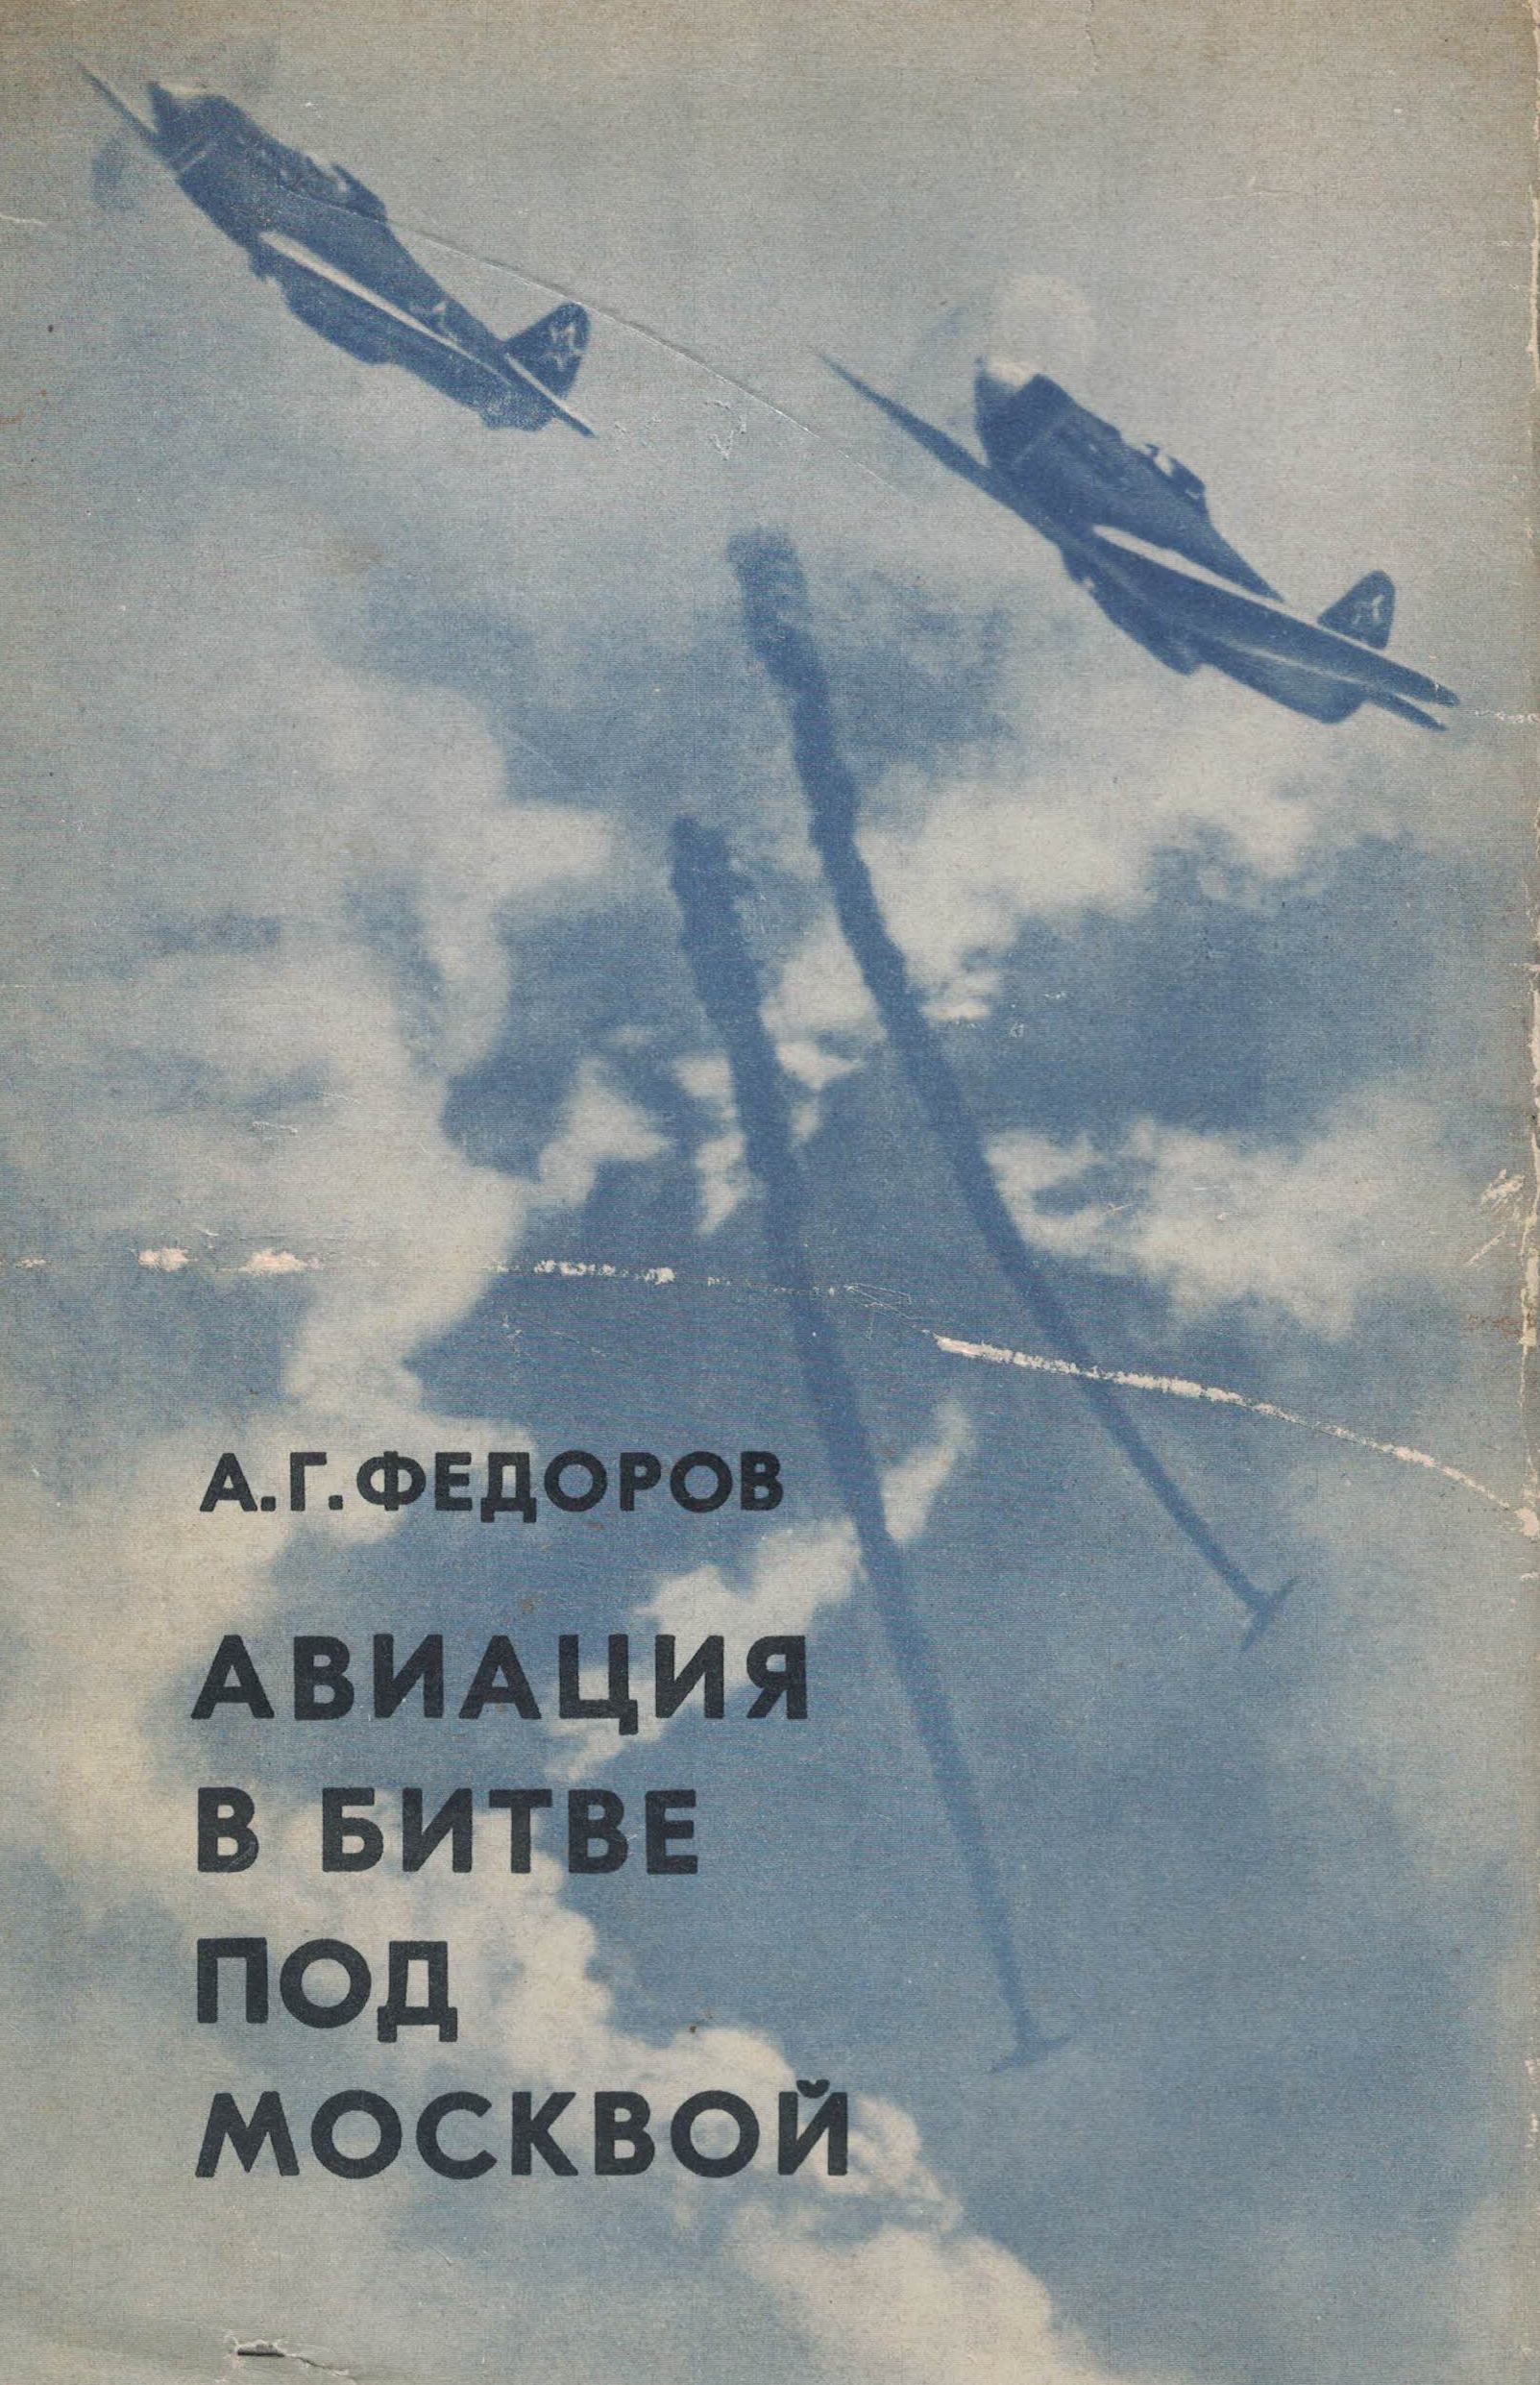 5010226  Фёдоров А.Г.  Авиация в битве под Москвой 2-е издание 1975 г.